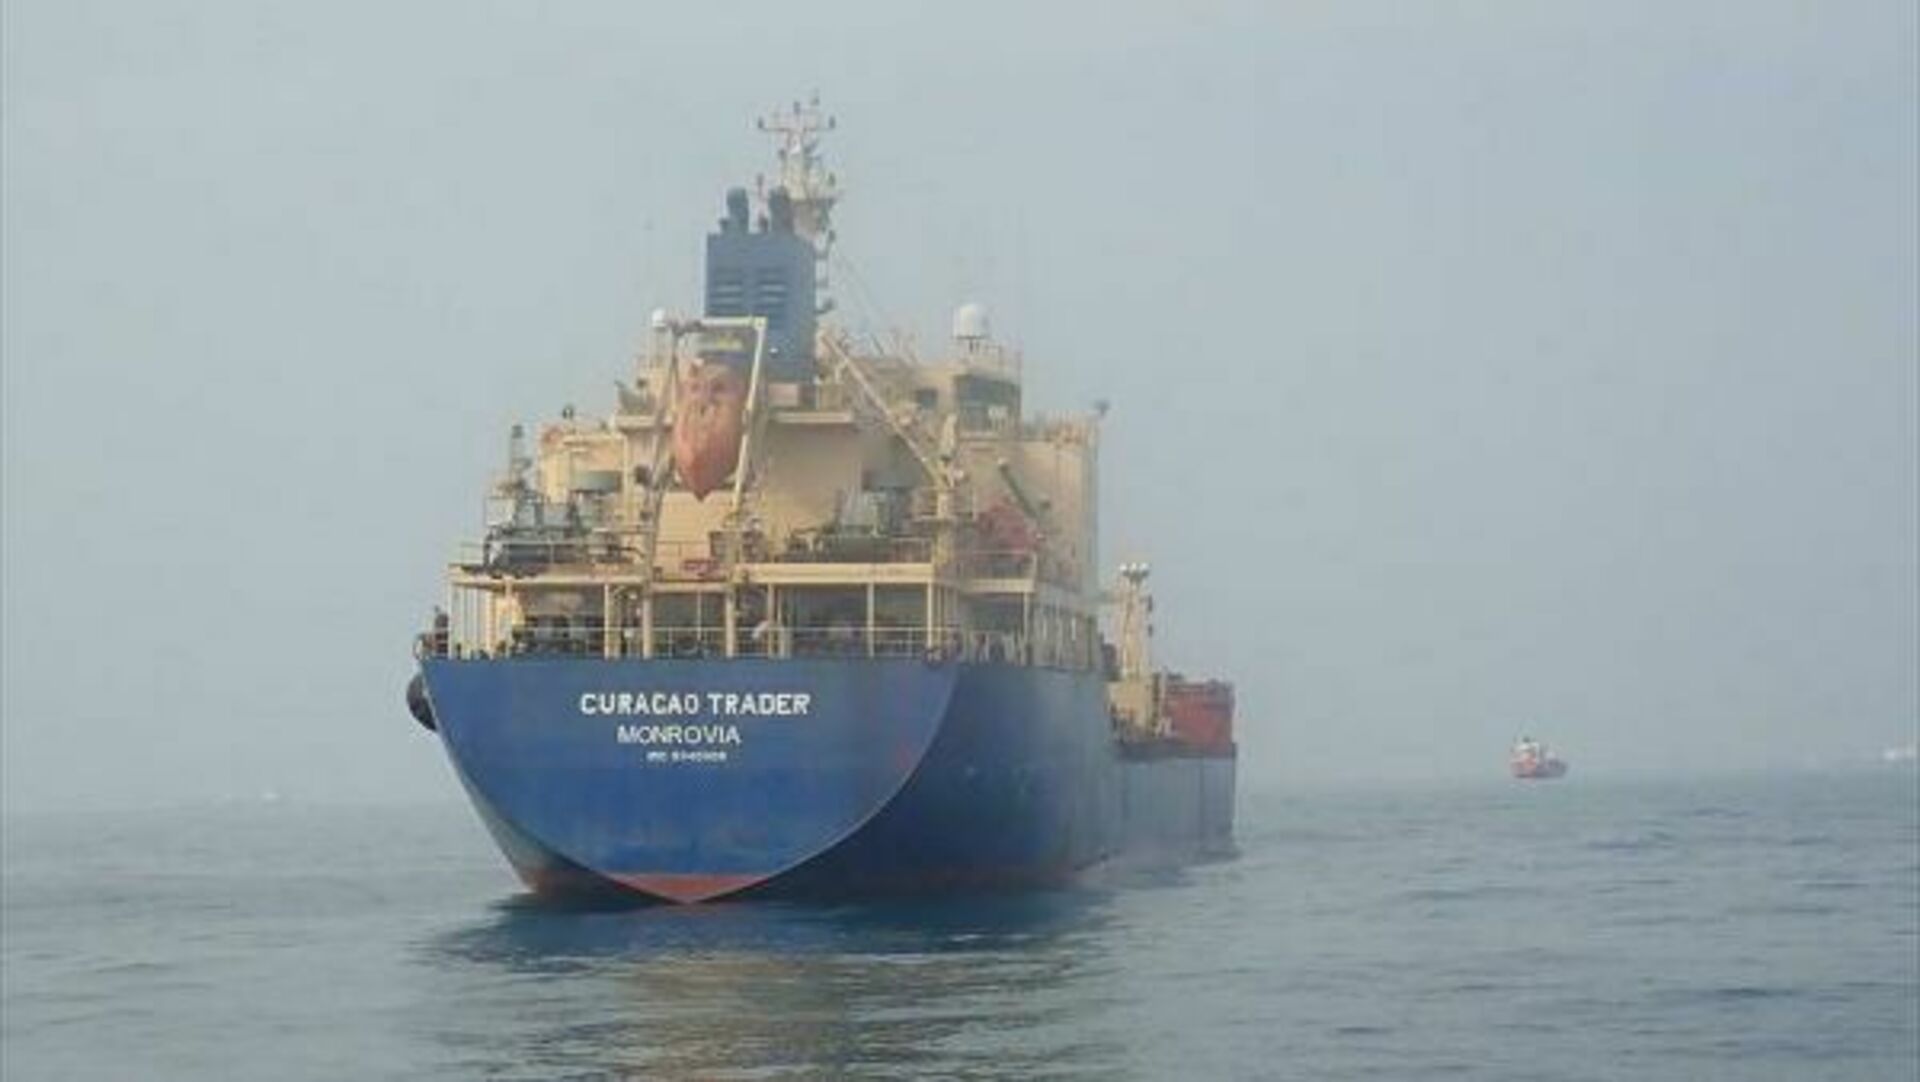 Нападение на судно. Танкер Туапсе. Гвинейский залив пираты танкер. Захват танкера. Захват судна пиратами.